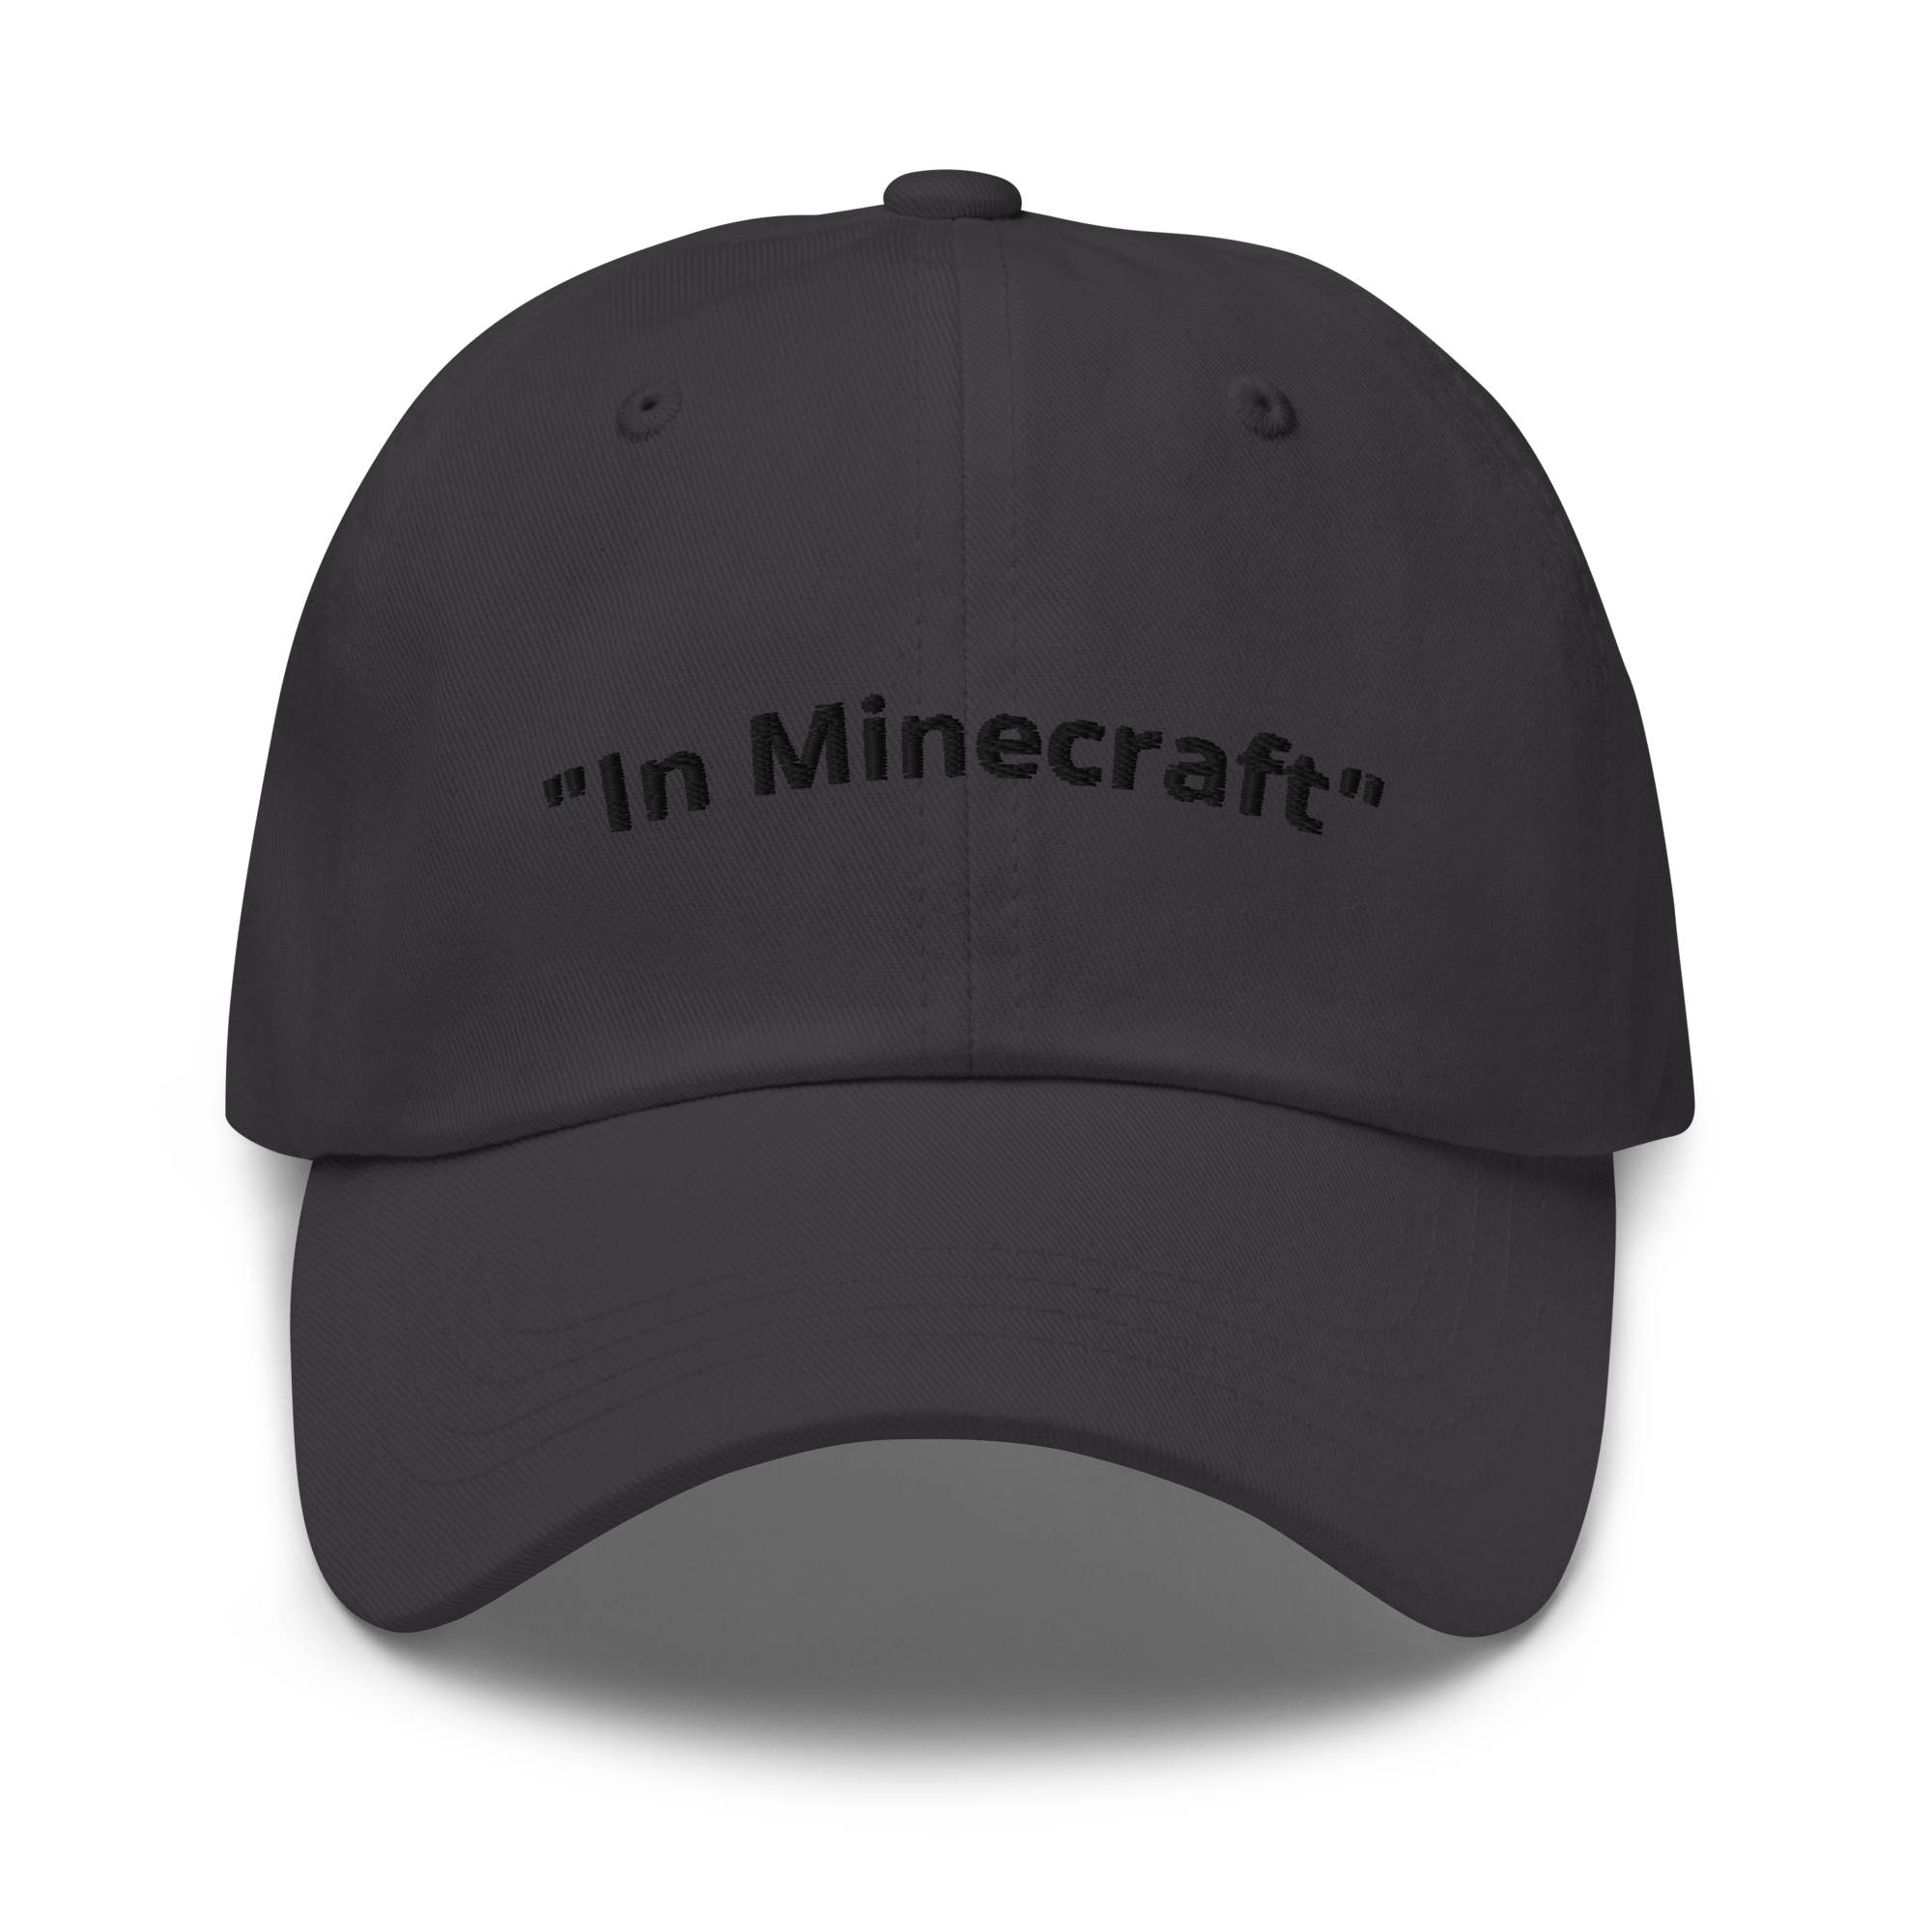 "In Minecraft" Dad Hat